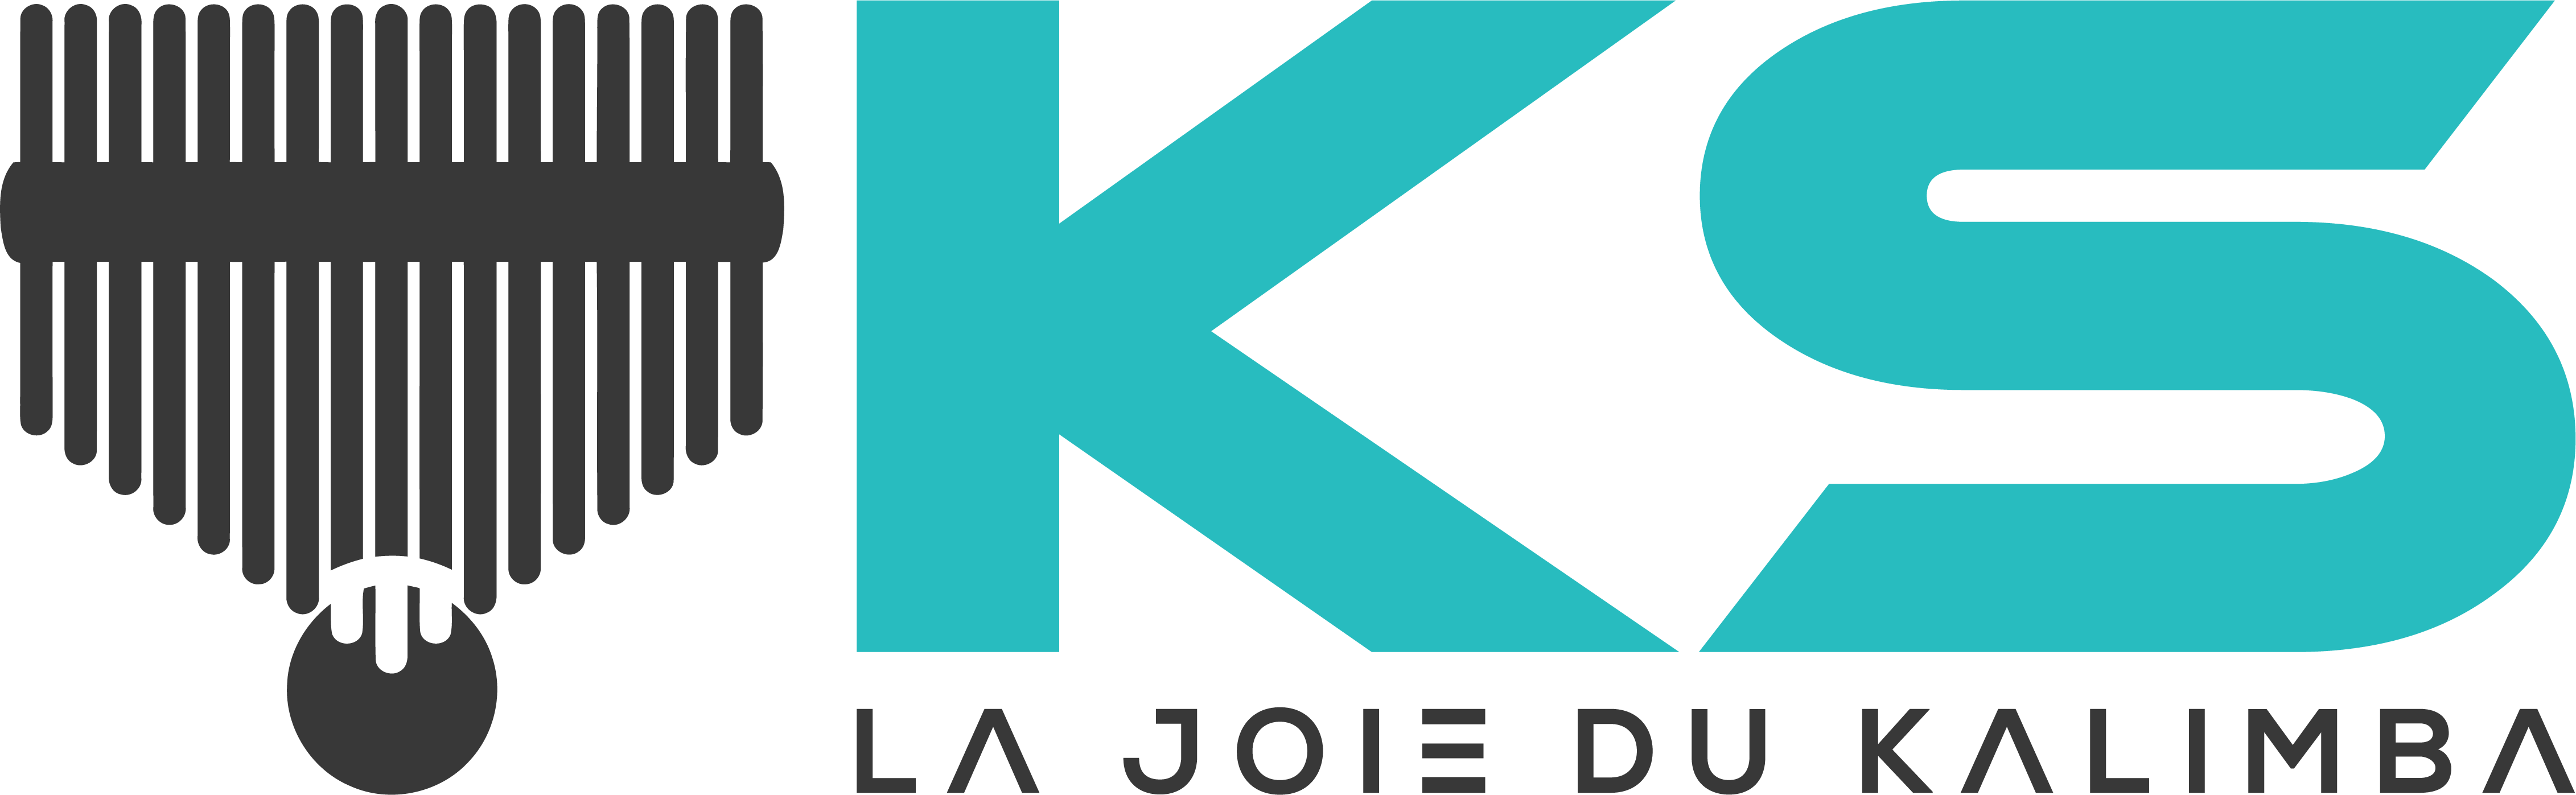 Logo Kalimba-sanza